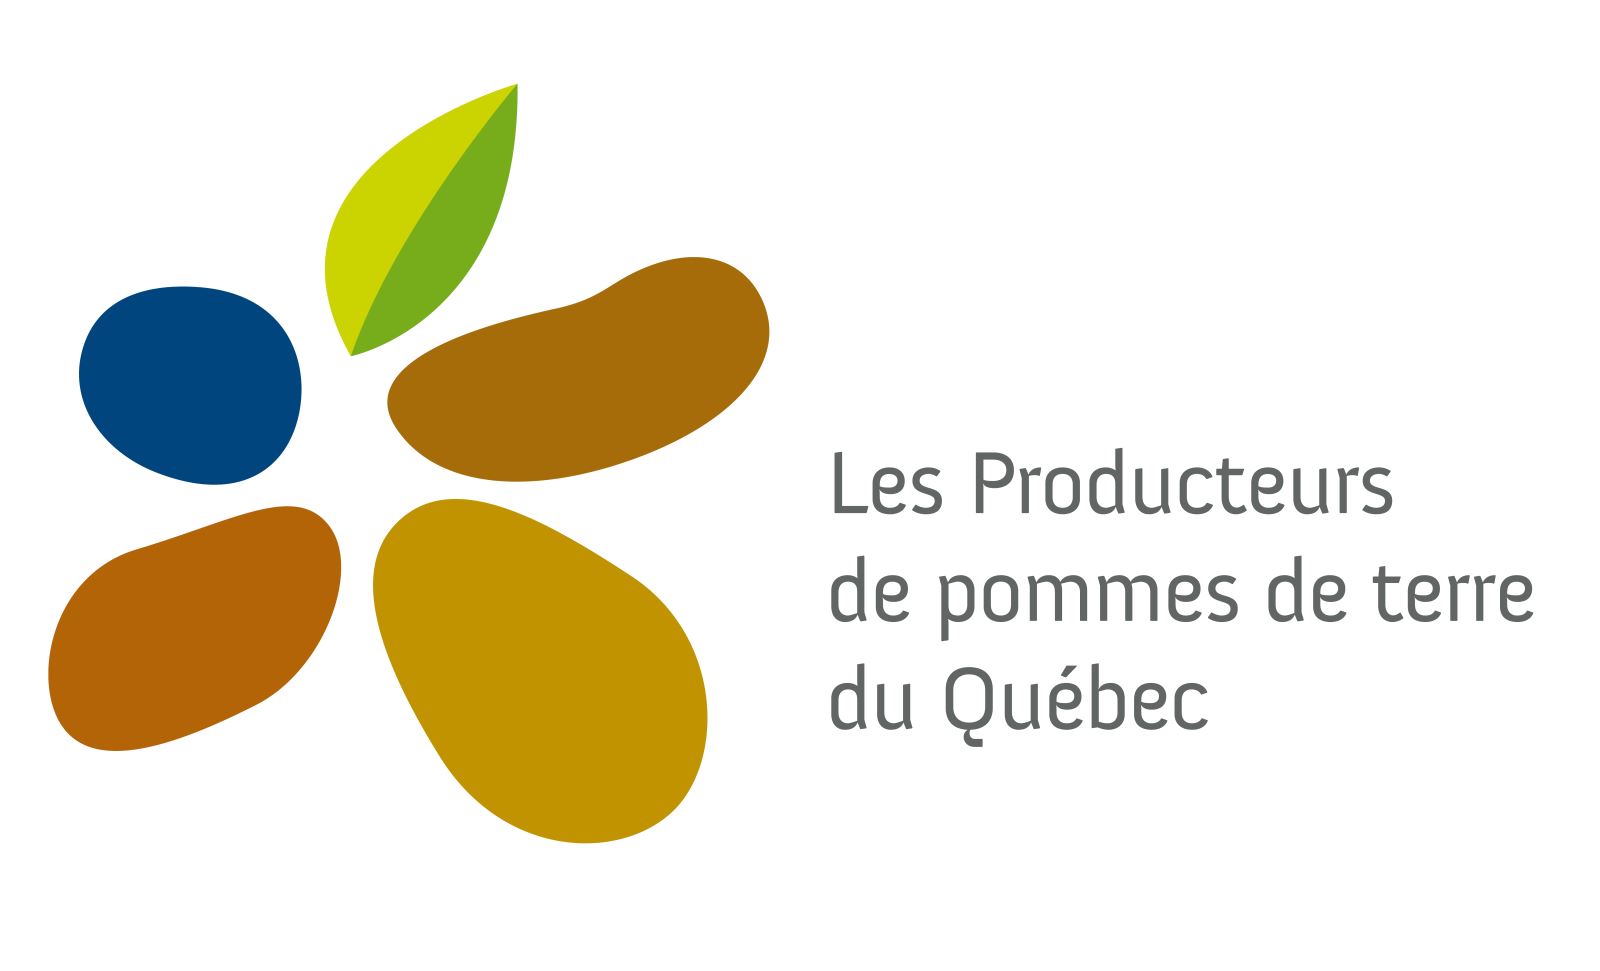 Les Producteurs de pomme de terre du Québec